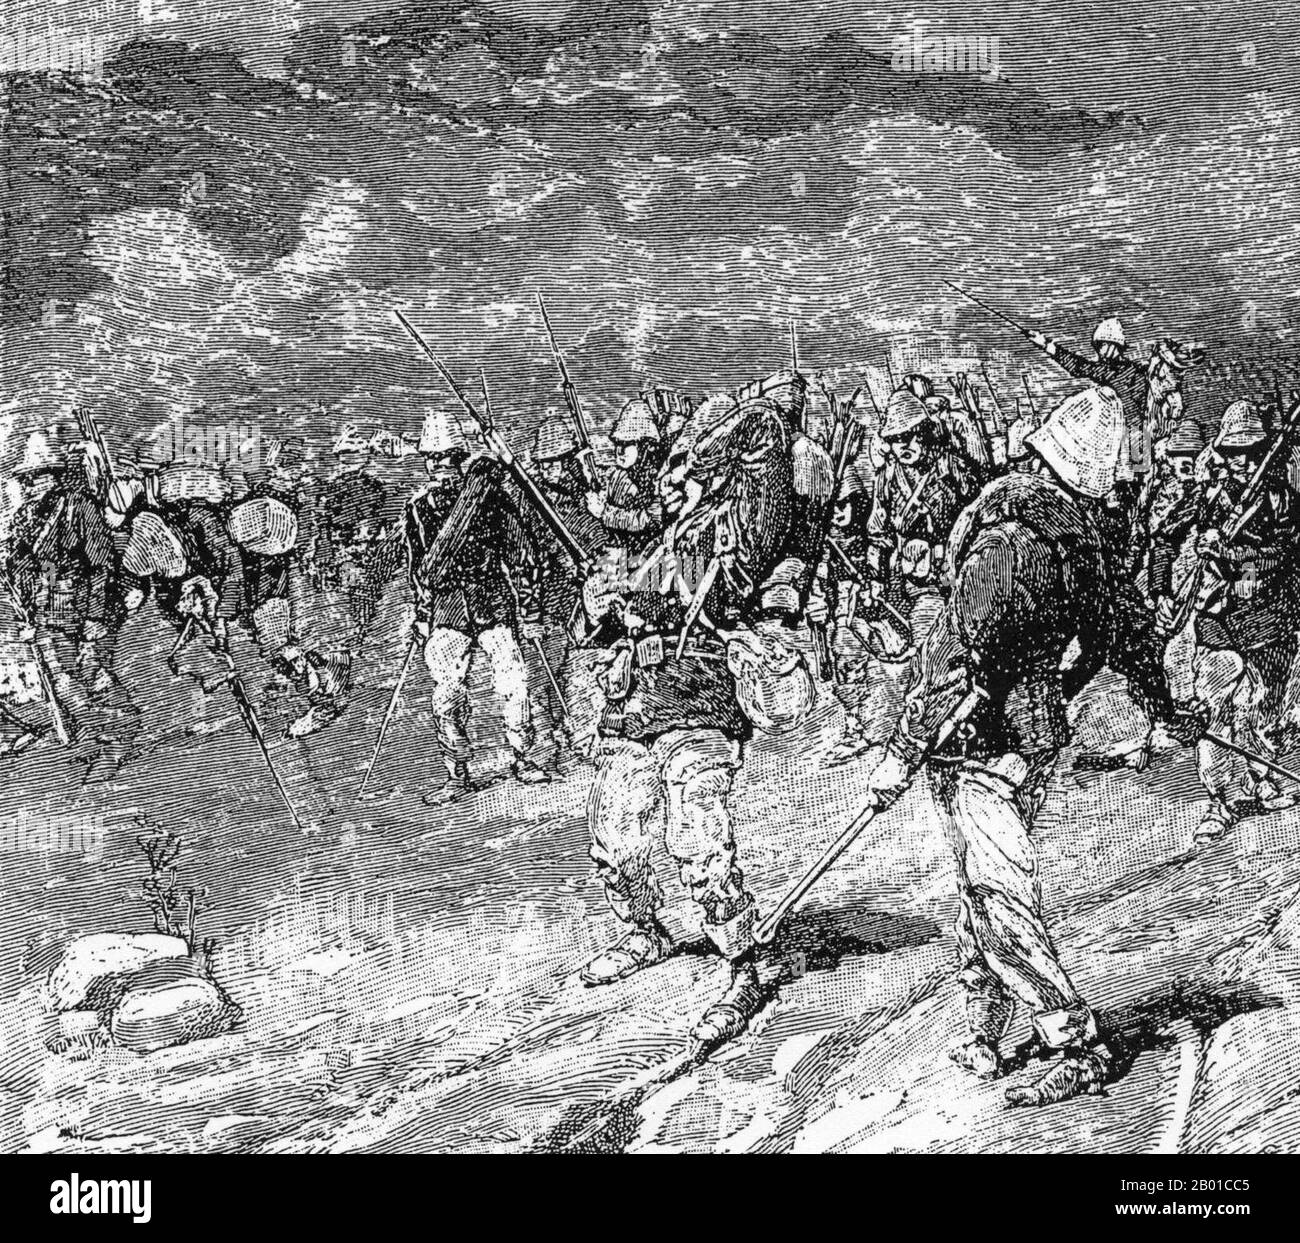 Vietnam: Angriffszug des Marineinfanteriebataillons von Mahias bei der Schlacht von Hoa MOC, 2. März 1885. Stich von Charles-Lucien Huard (12. Februar 1837 - 22. Januar 1899), 1887. Die Tonkin-Kampagne (französisch: Campagne du Tonkin) war ein bewaffneter Konflikt, der zwischen Juni 1883 und April 1886 von den Franzosen gegen die Vietnamesen, Liu Yongfus Armee mit schwarzer Flagge und die chinesischen Armeen Guangxi und Yunnan geführt wurde, um Tonkin (Nordvietnam) zu besetzen und dort ein französisches Protektorat zu verankern. Stockfoto